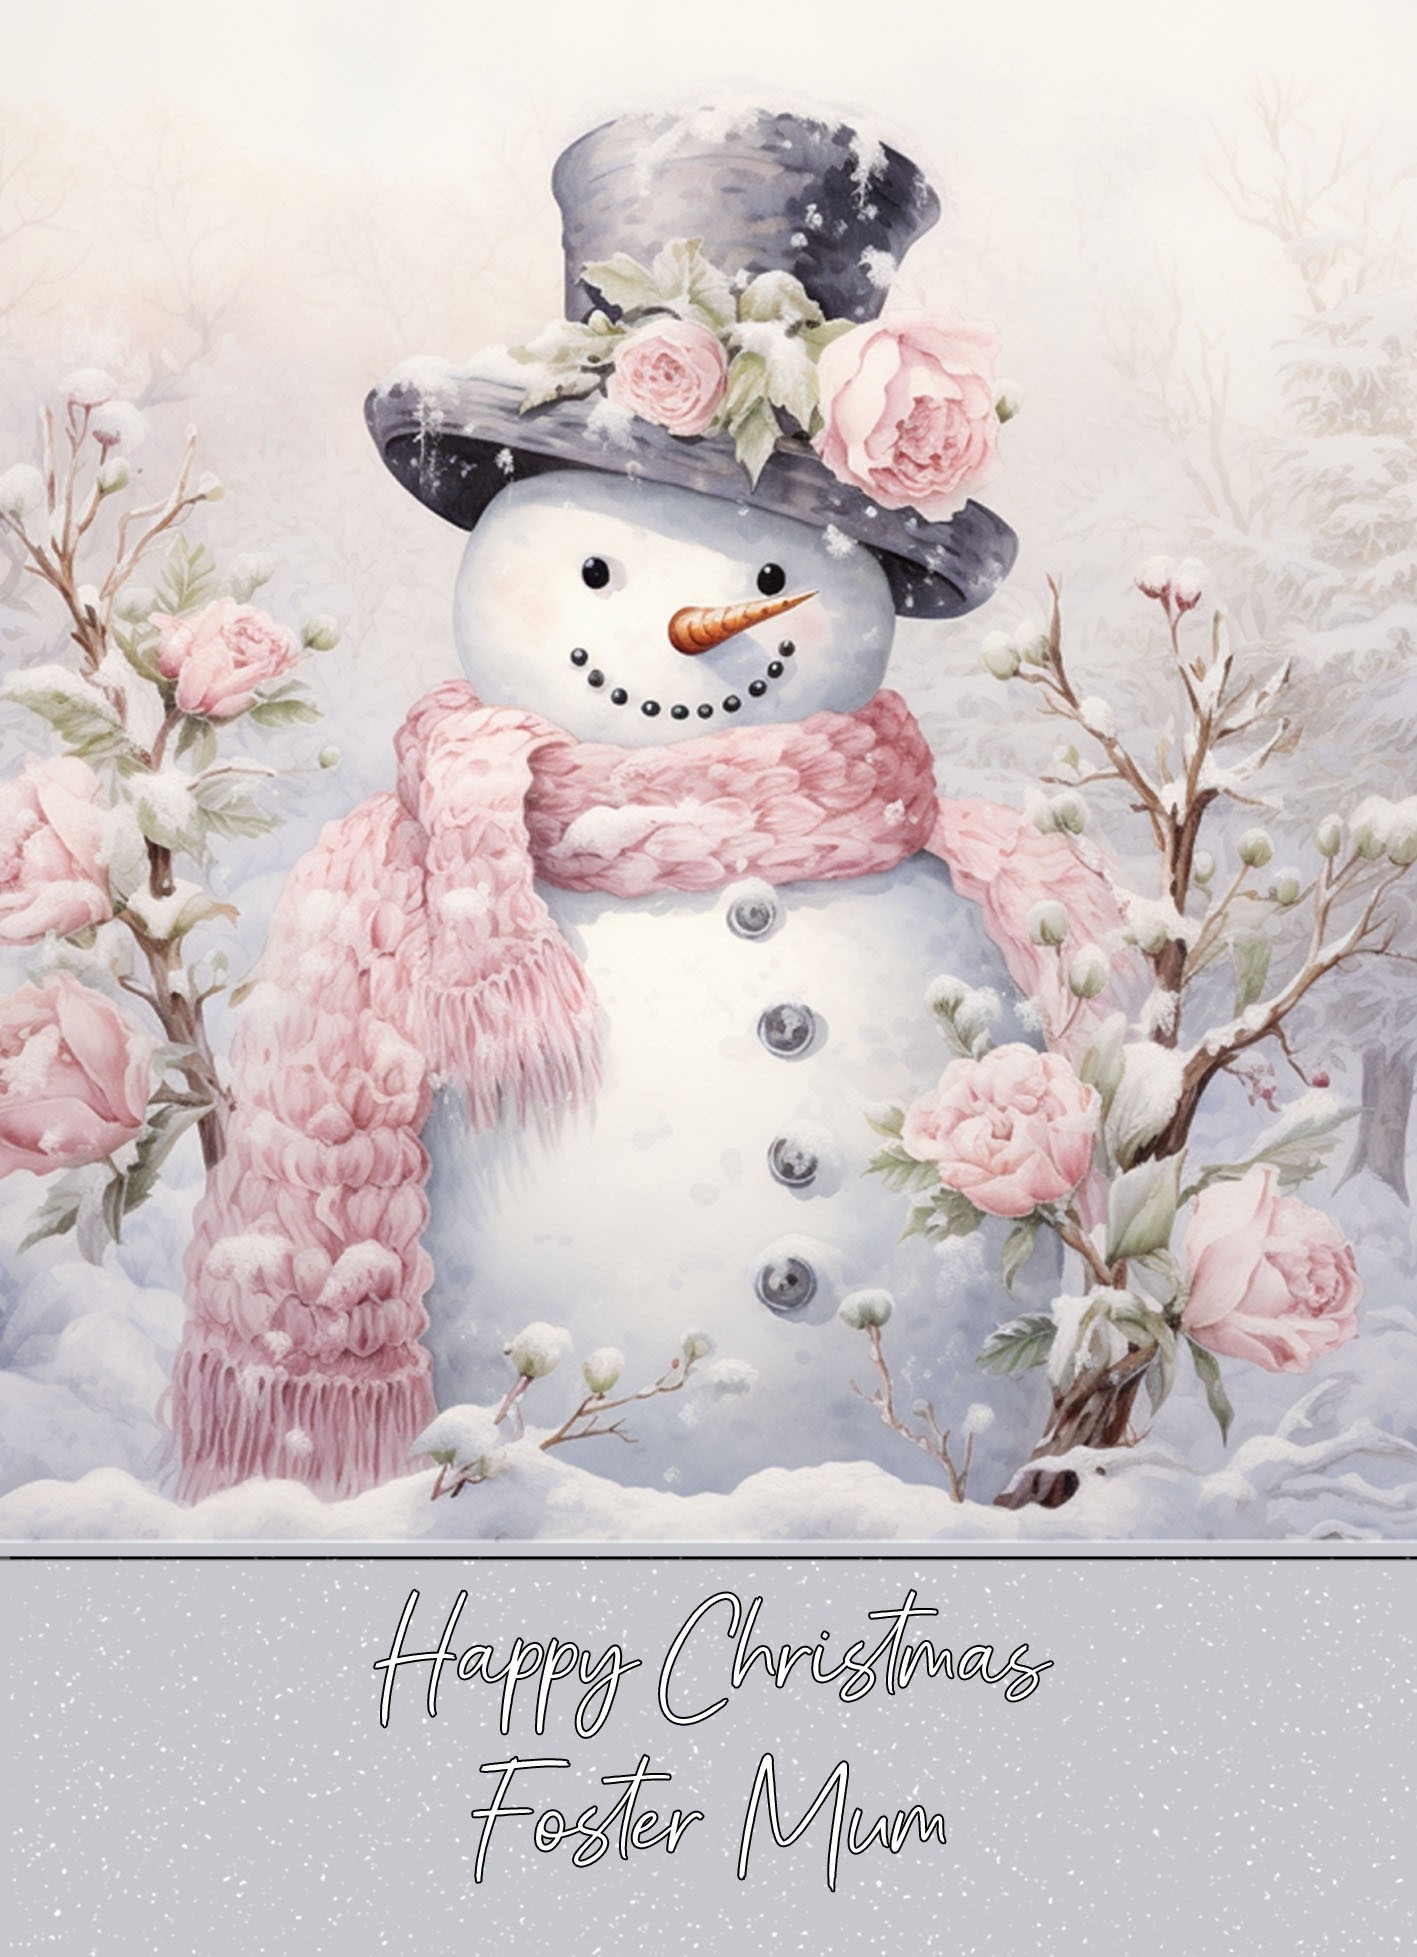 Snowman Art Christmas Card For Foster Mum (Design 1)